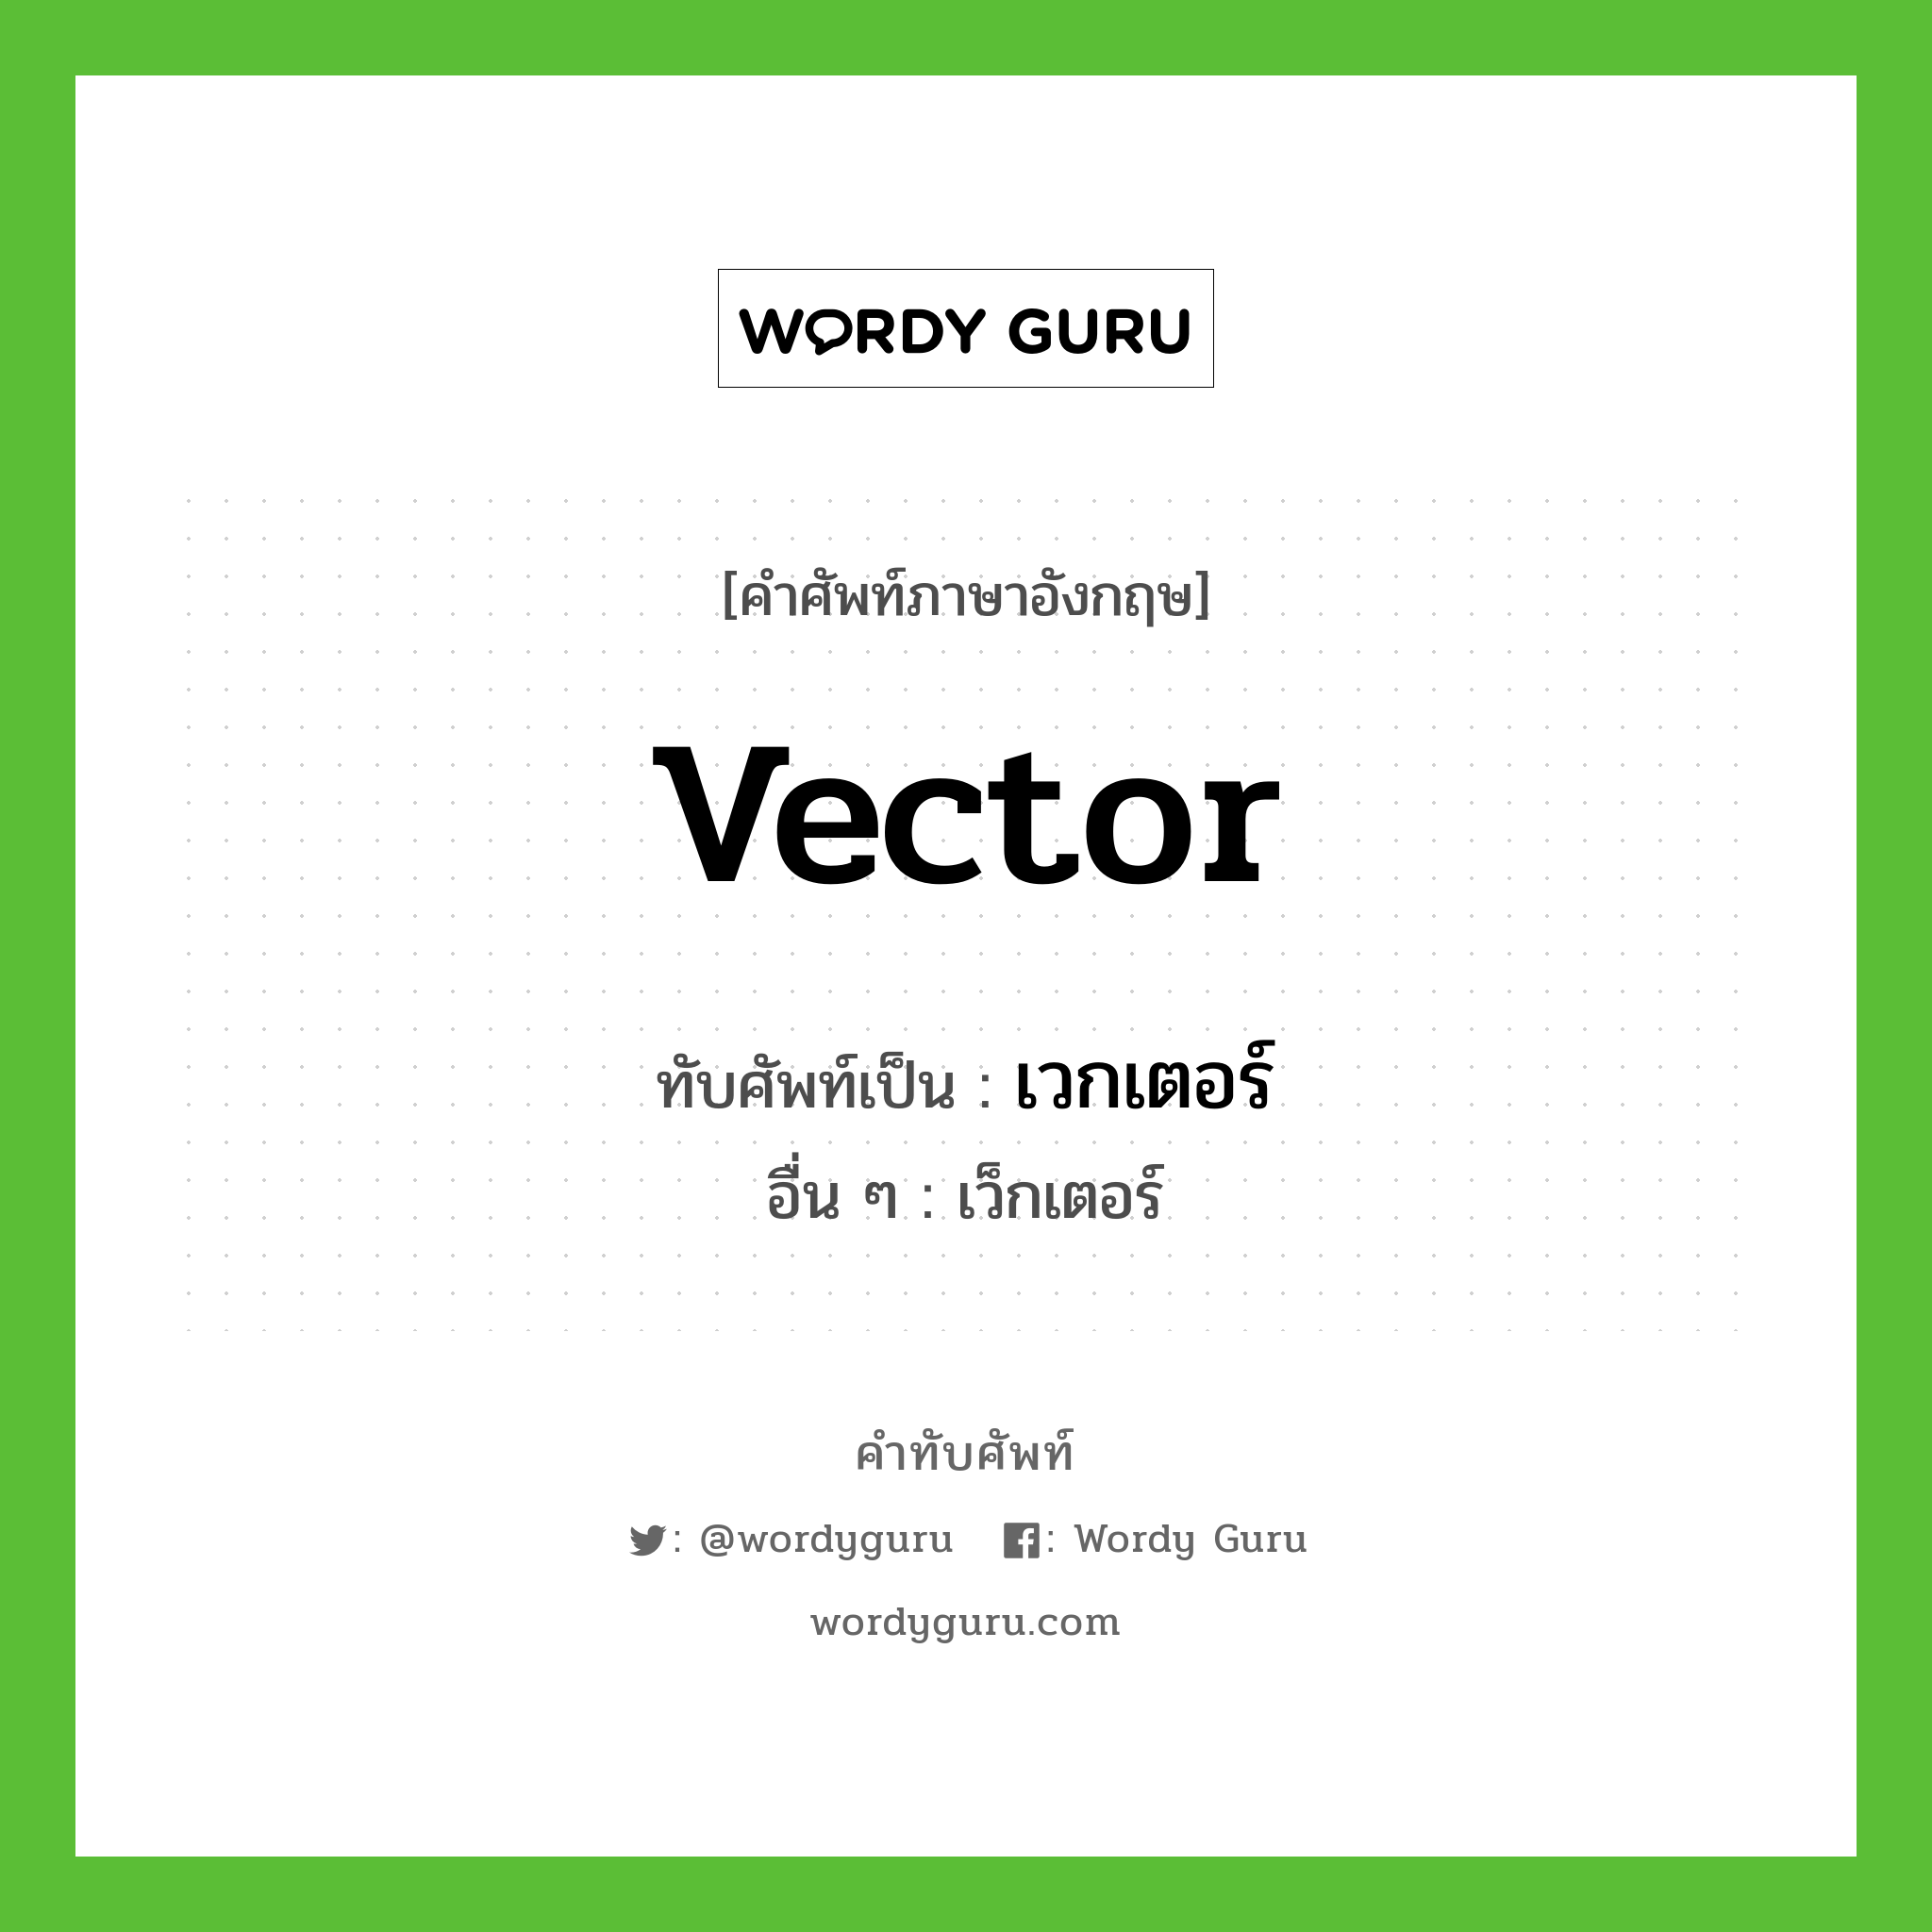 เวกเตอร์ เขียนอย่างไร?, คำศัพท์ภาษาอังกฤษ เวกเตอร์ ทับศัพท์เป็น vector อื่น ๆ เว็กเตอร์